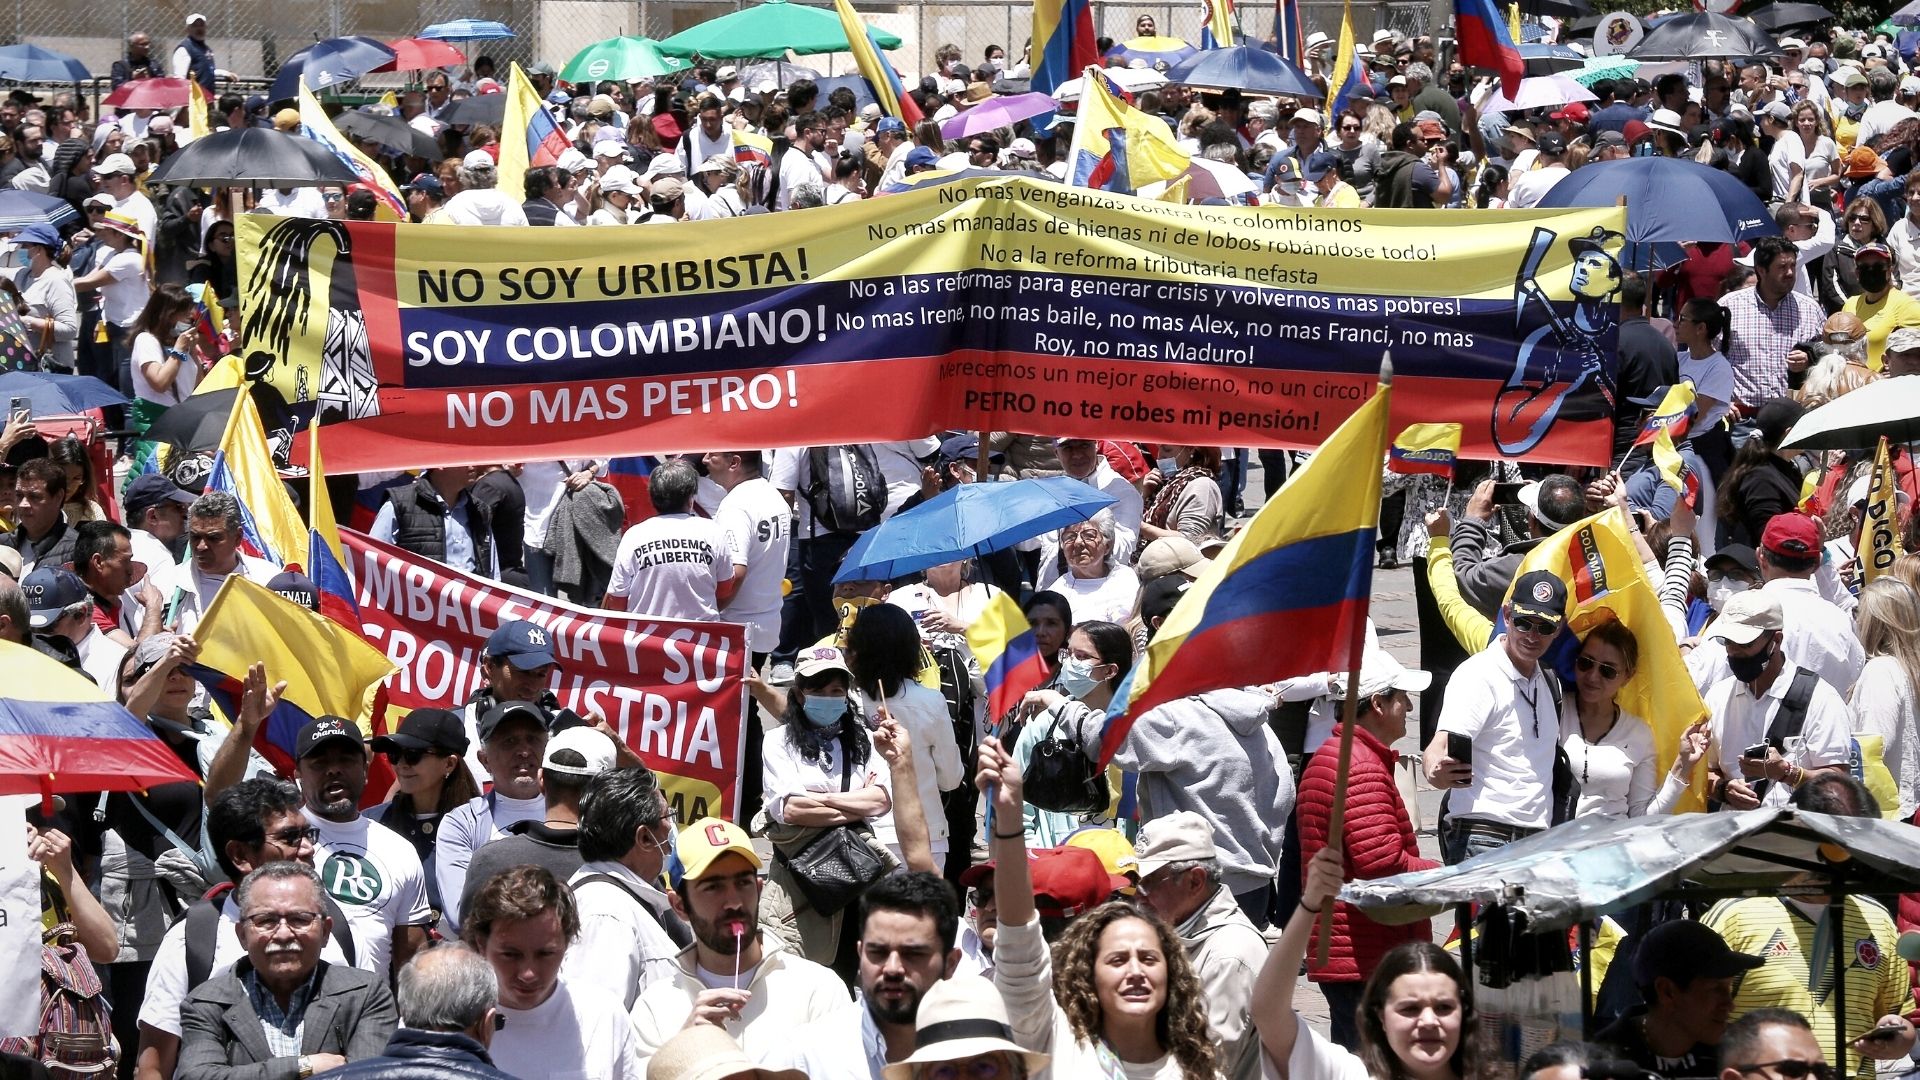 “Colombia no debe ser condenada a la pobreza”: el argumento de los marchantes en contra del presidente Petro